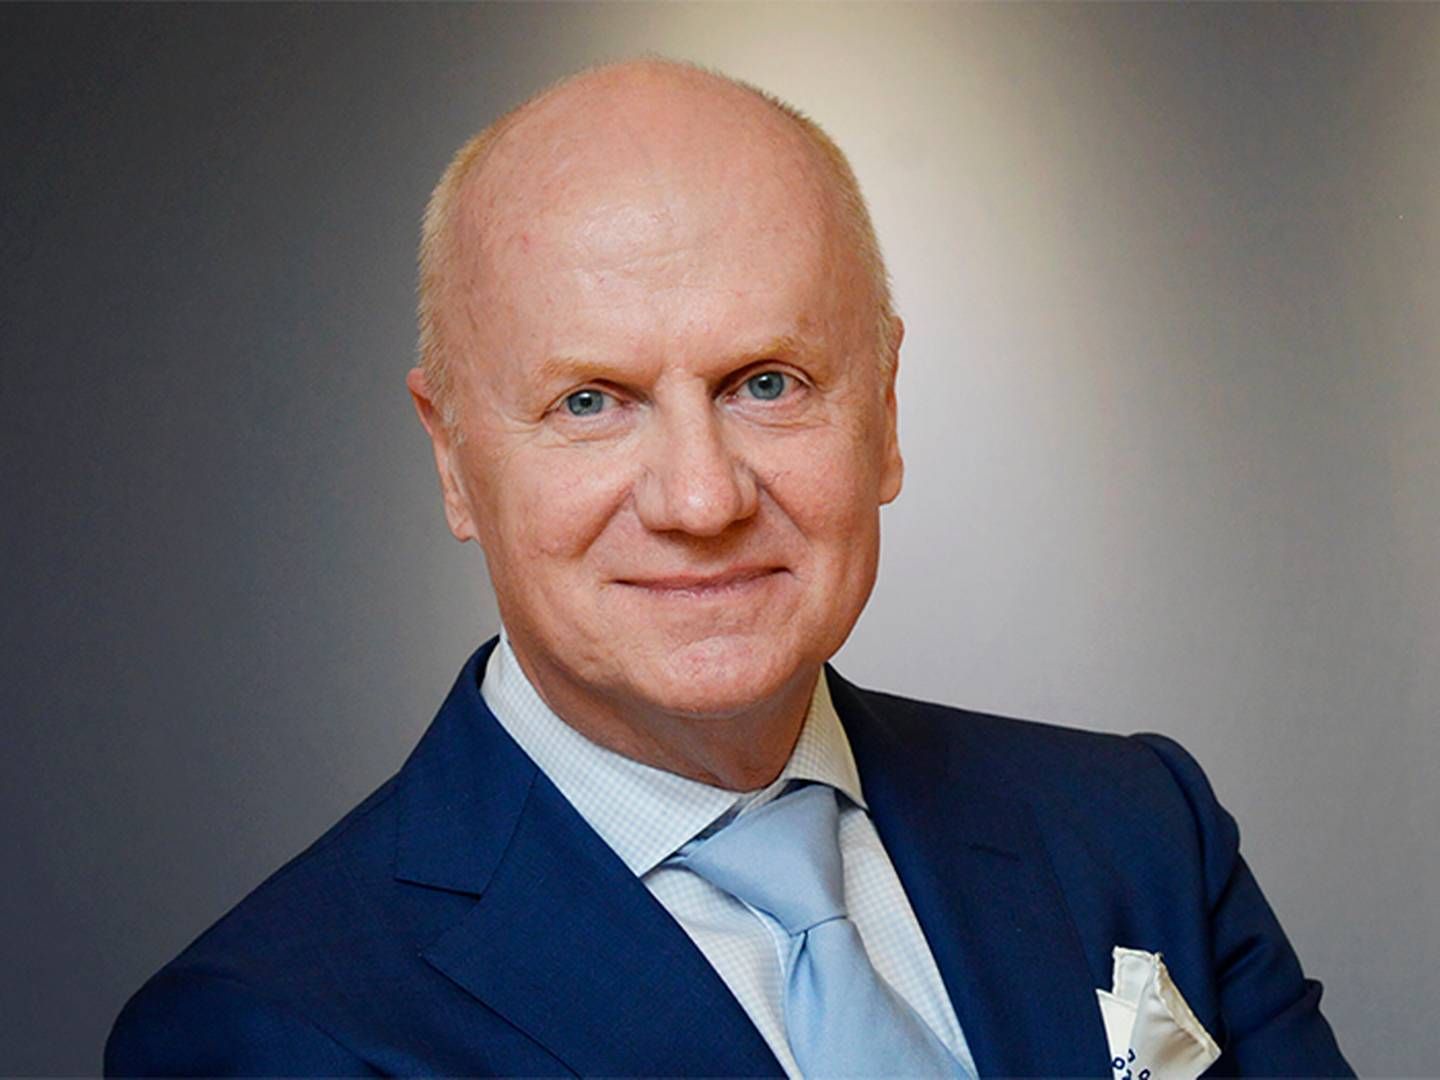 LEDER FINANSINSPEKTIONEN: Daniel Barr investerte milliarder i Heimstaden Bostad da han ledet Pensionsmyndigheten. | Foto: Finansinspektionen